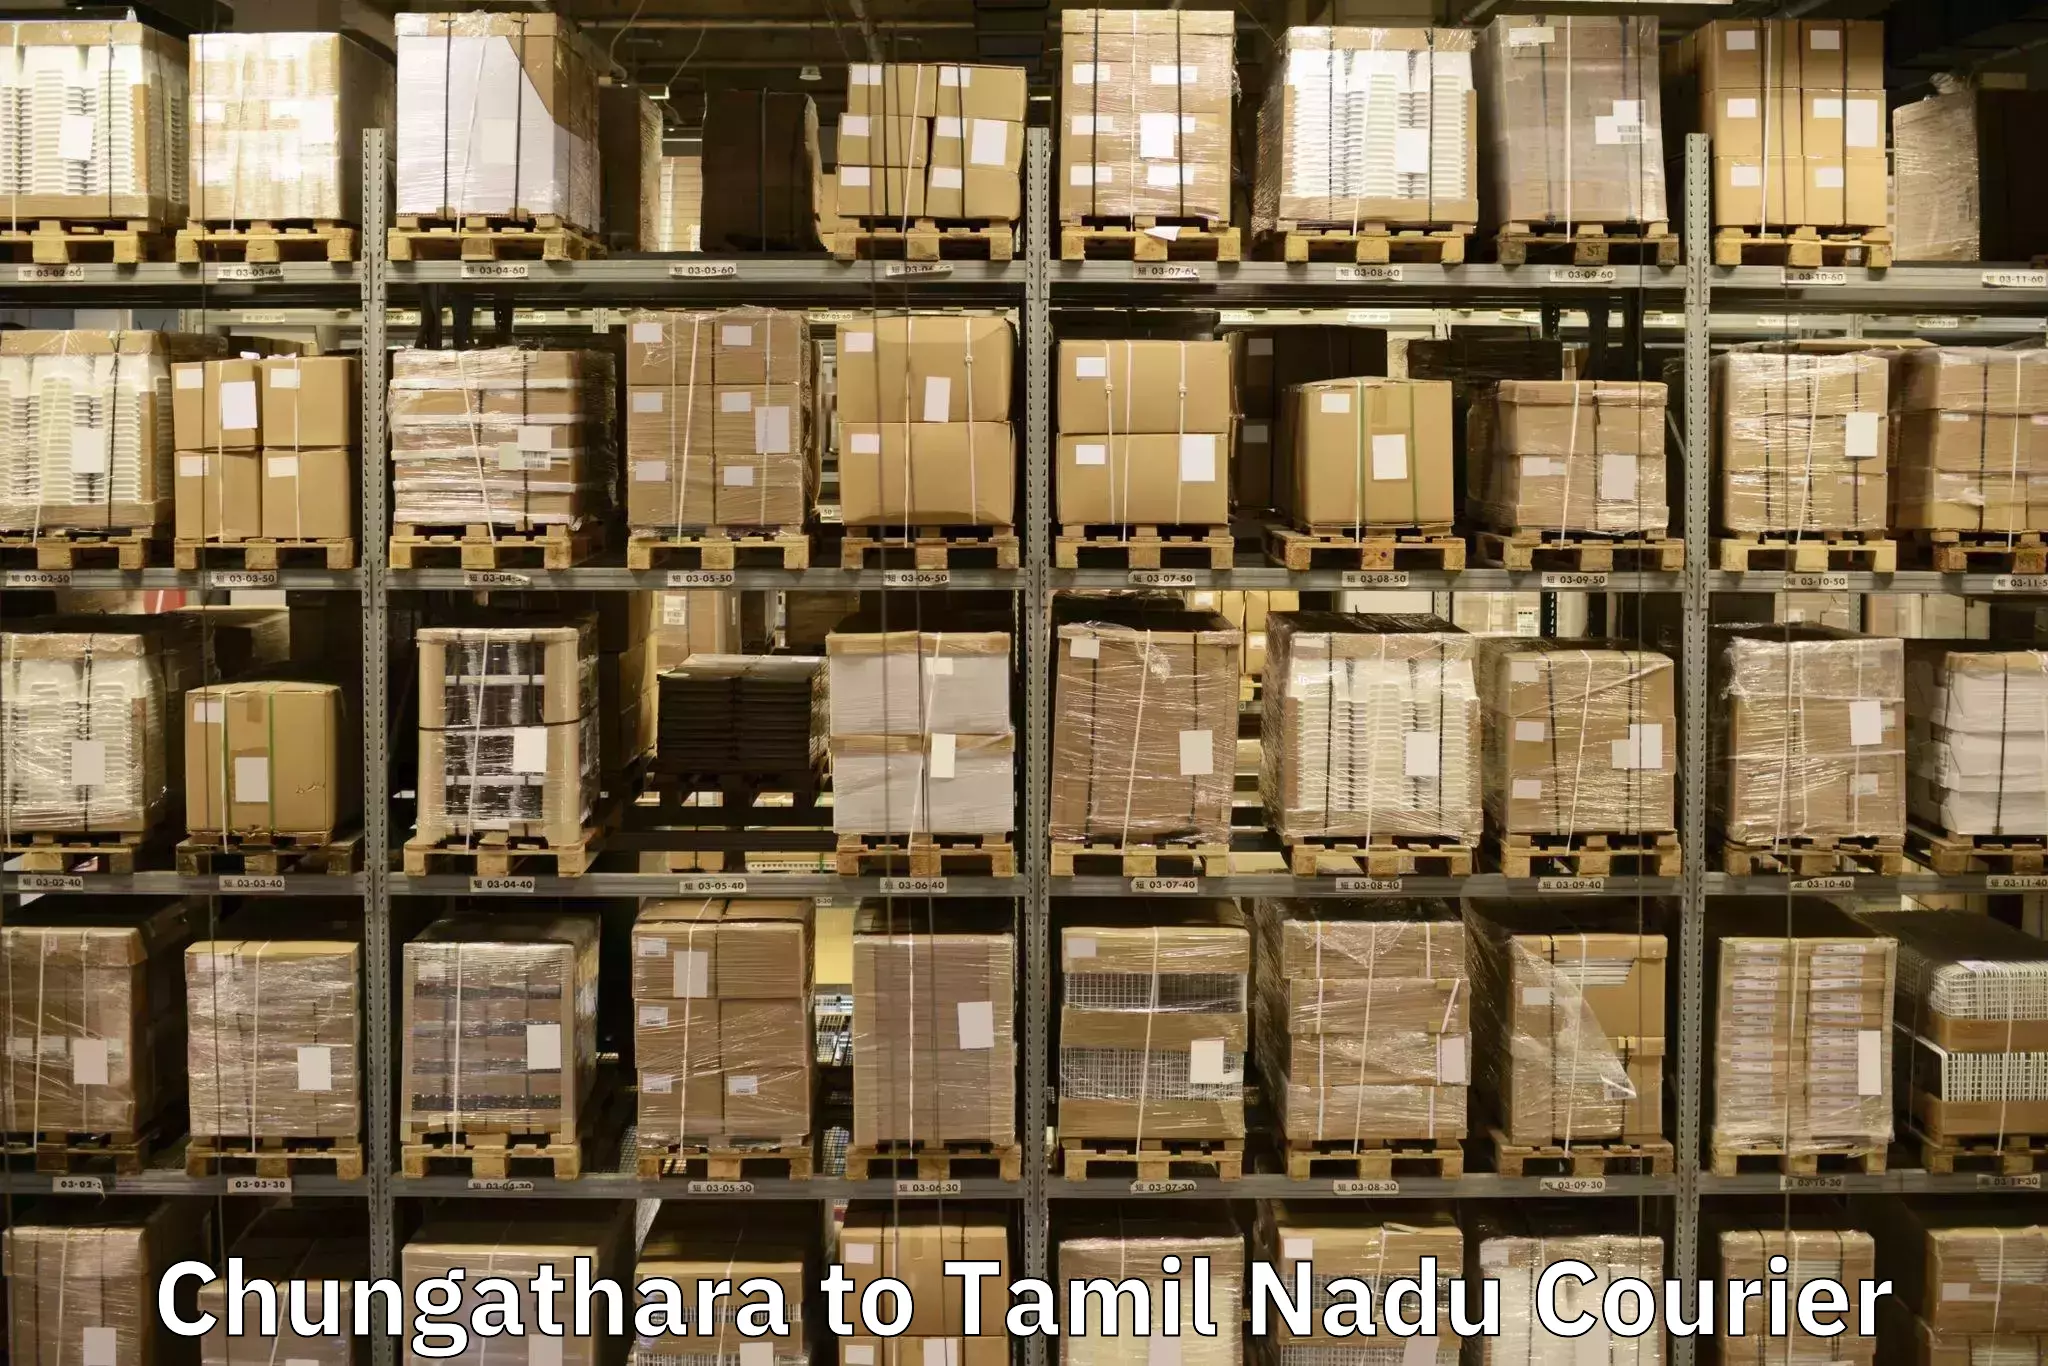 Expert moving and storage Chungathara to Krishnagiri